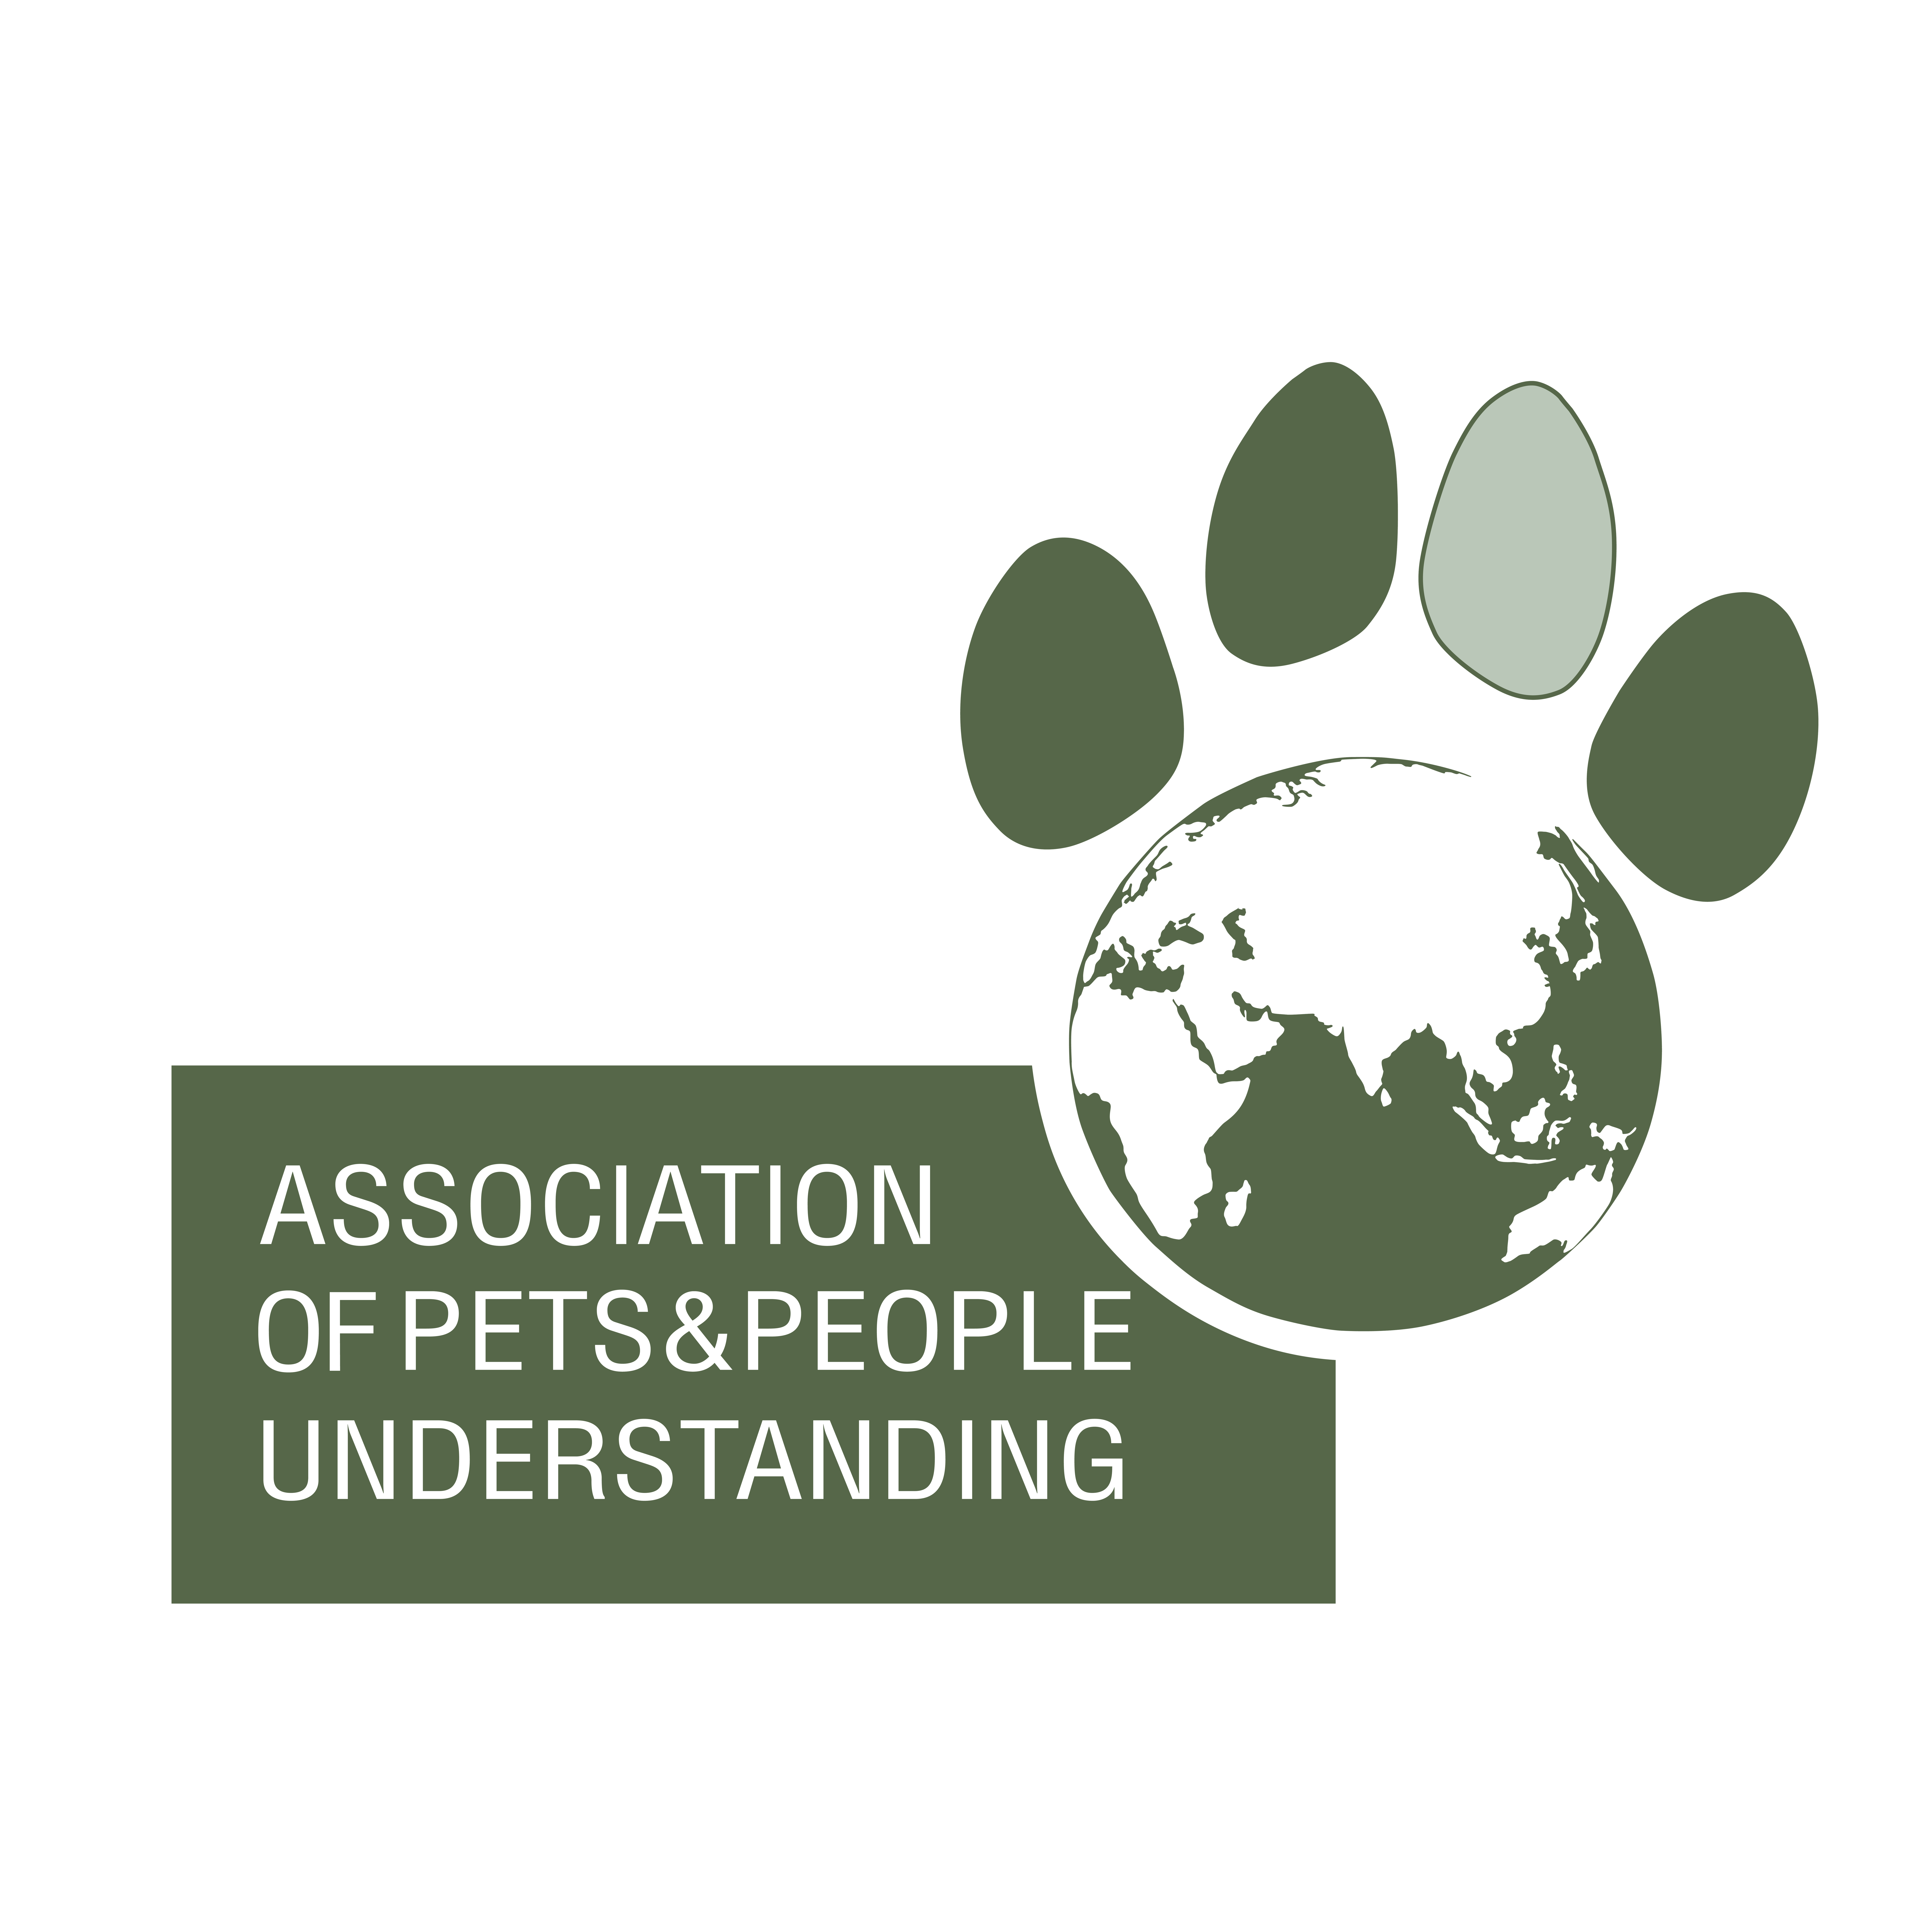 Association of Pets&People Understanding